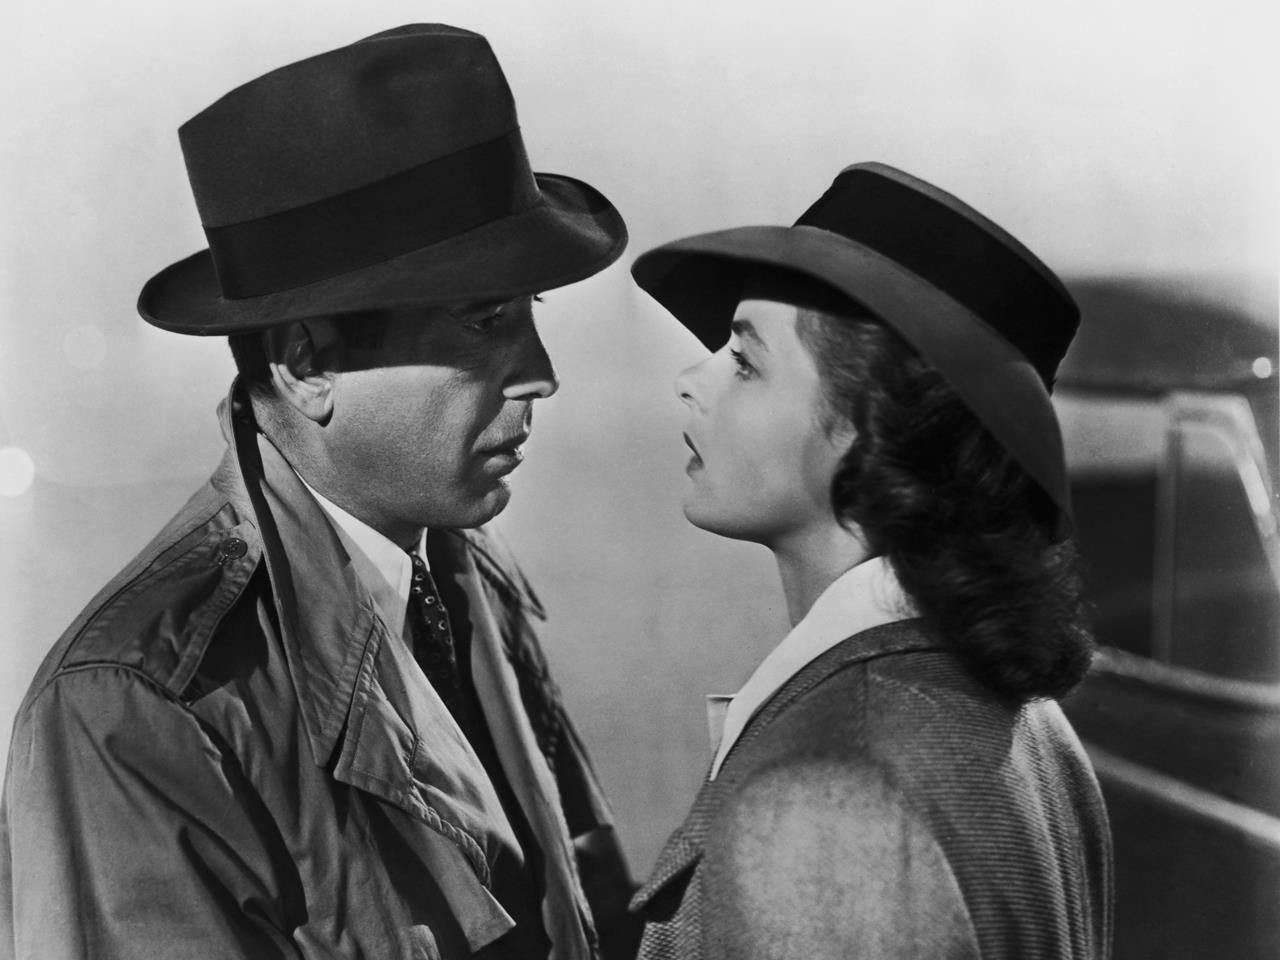 Ban dau gia chiec dan piano trong film Casablanca 